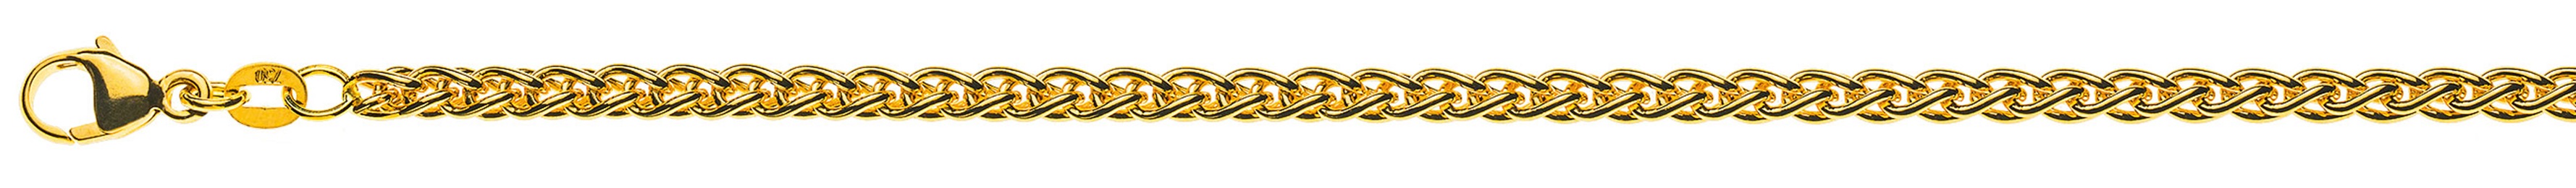 AURONOS Prestige Halskette Gelbgold 18K Zopfkette 42cm 3.3mm